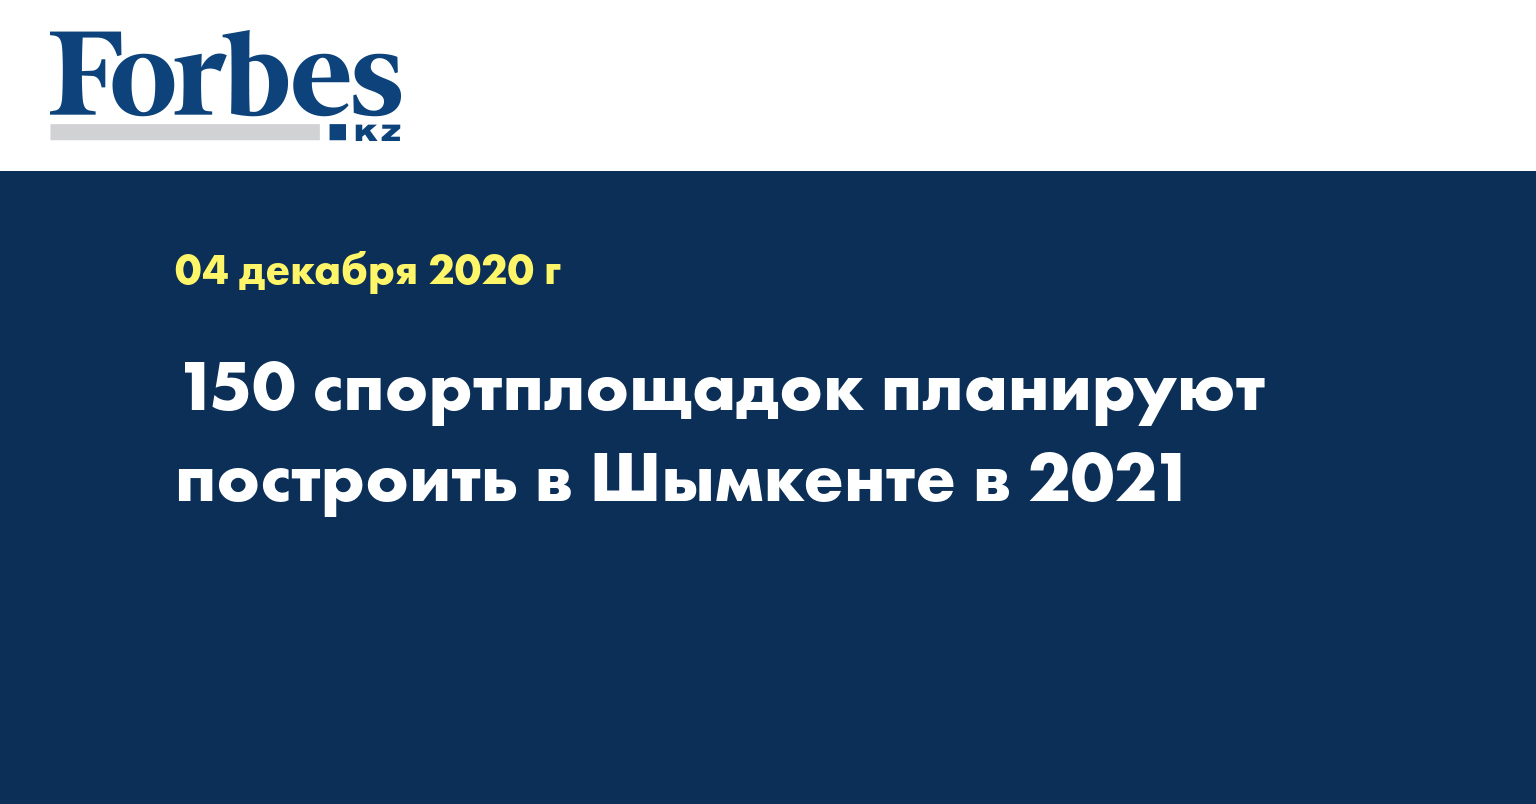  150 спортплощадок планируют построить в Шымкенте в 2021